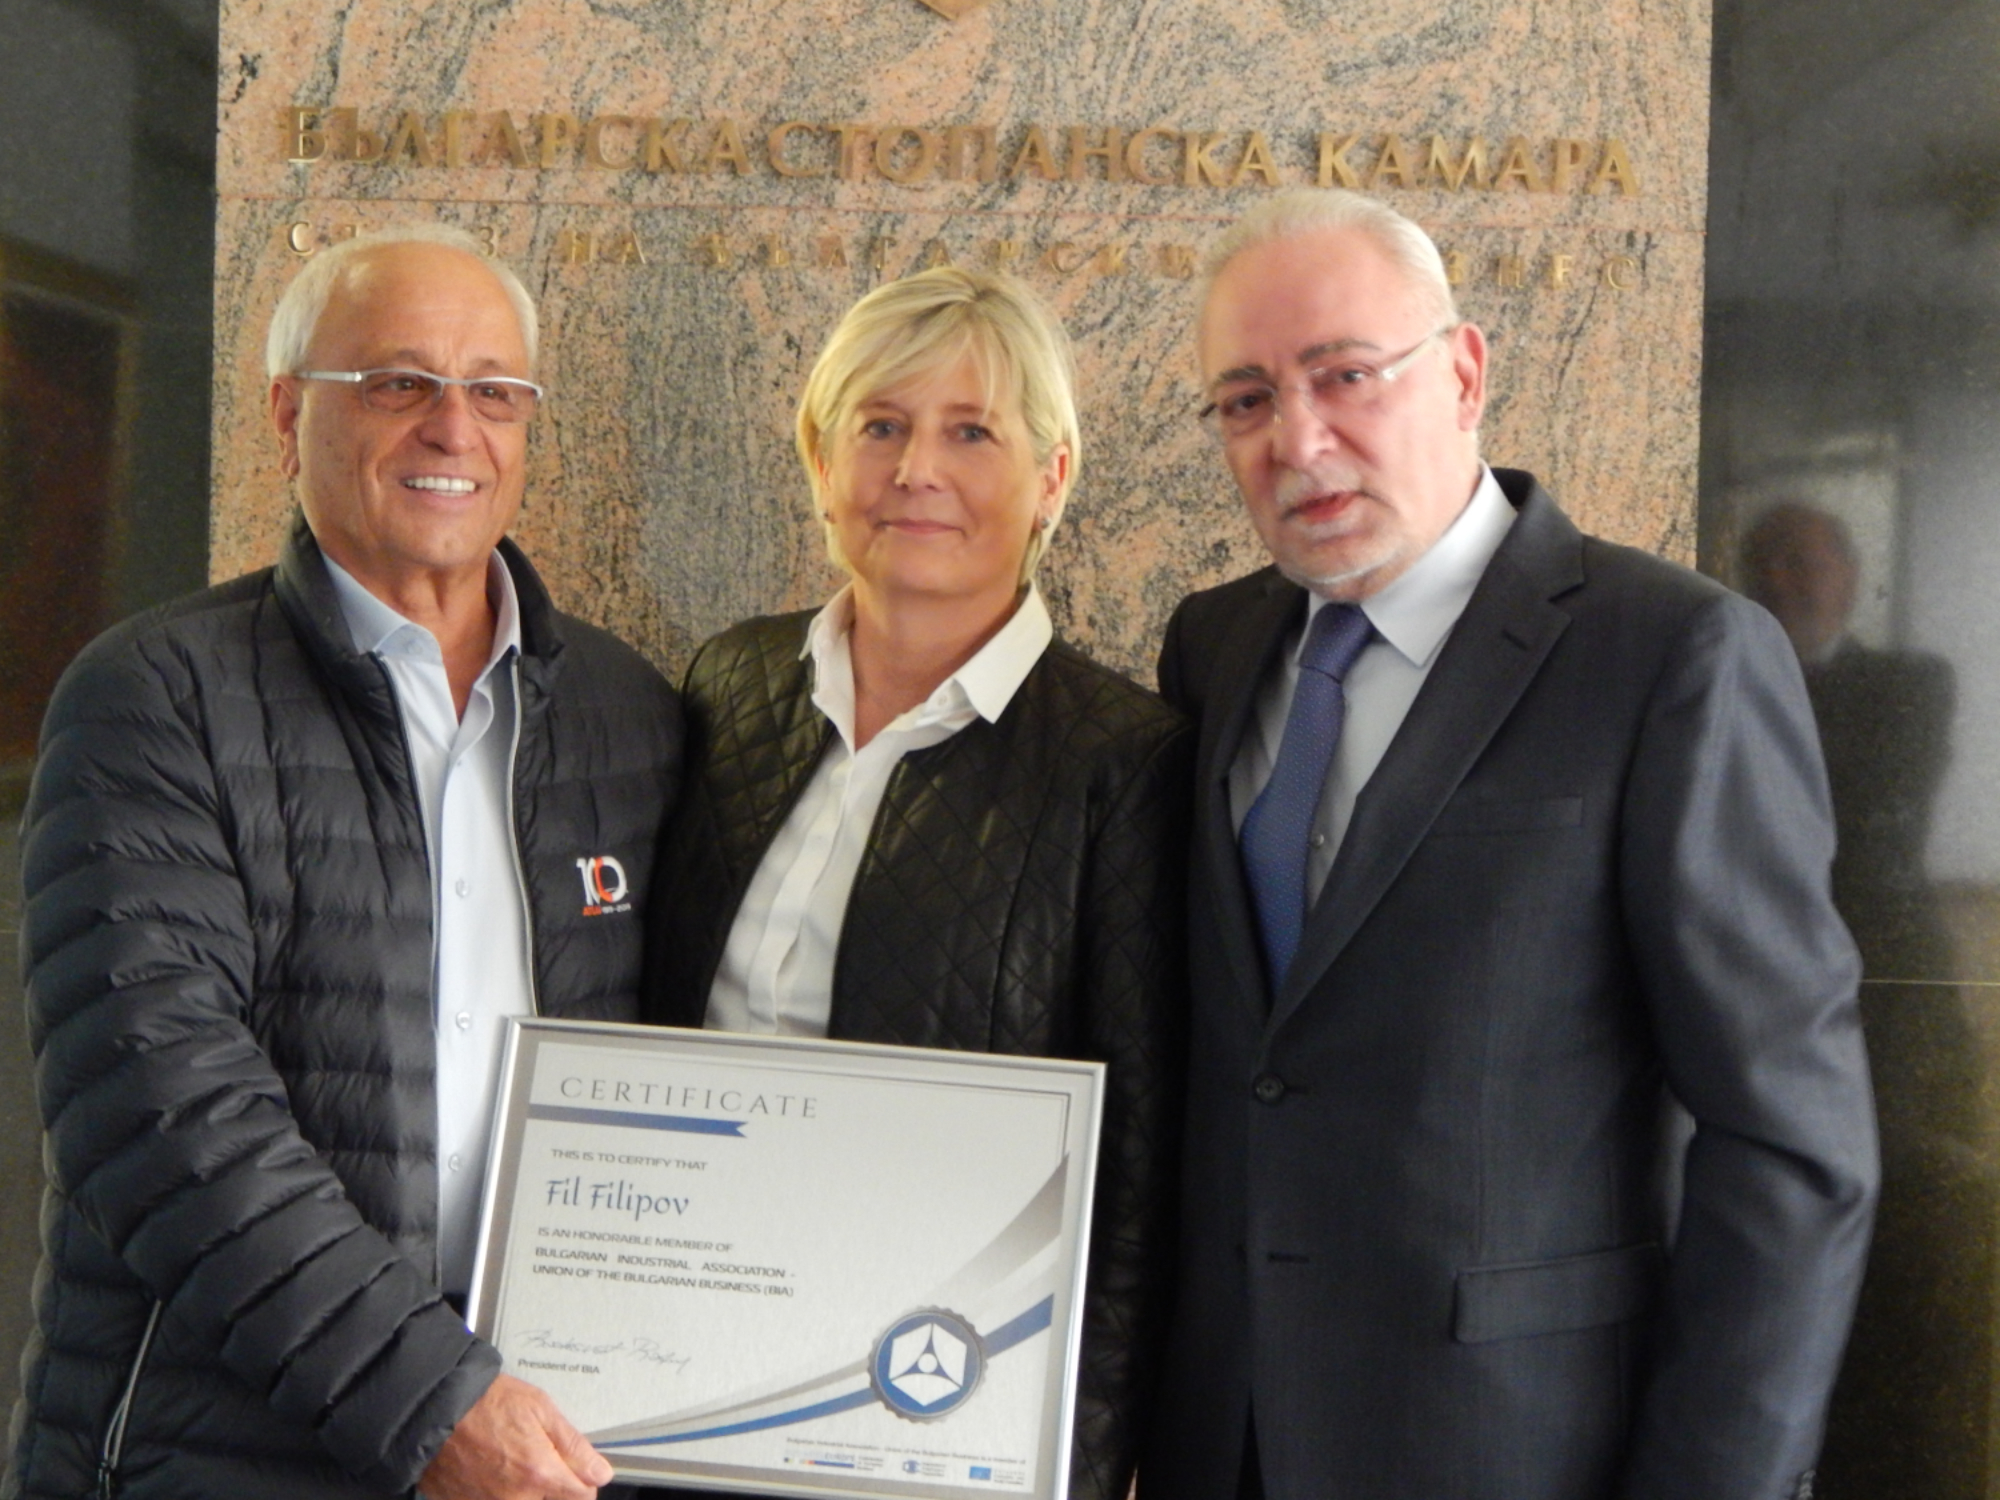 Връчване на Сертификат за почетен член на Фил Филипов